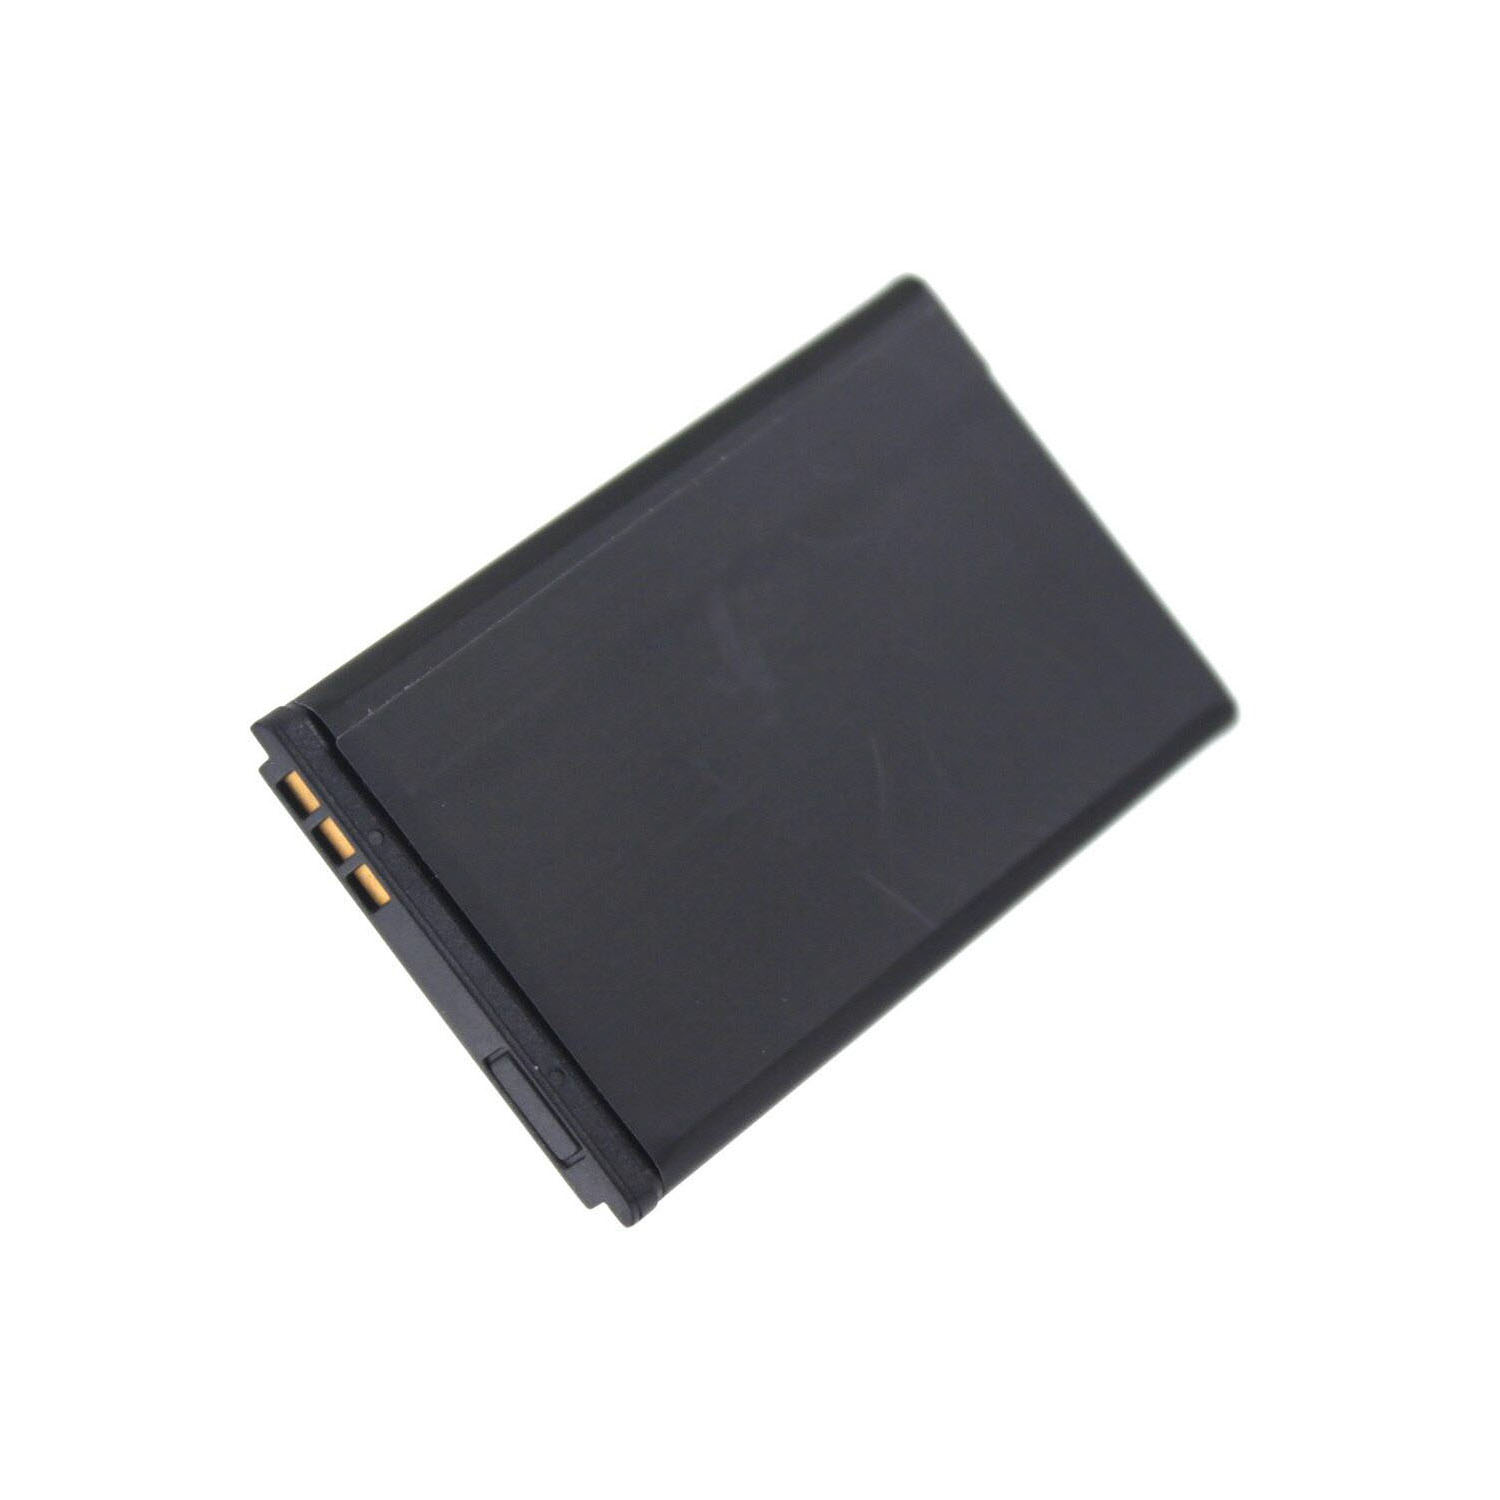 AGI Akku kompatibel mit Li-Pol, 750 Li-Pol Handy-/Smartphoneakku, Olympia Bella 3.7 Volt, mAh